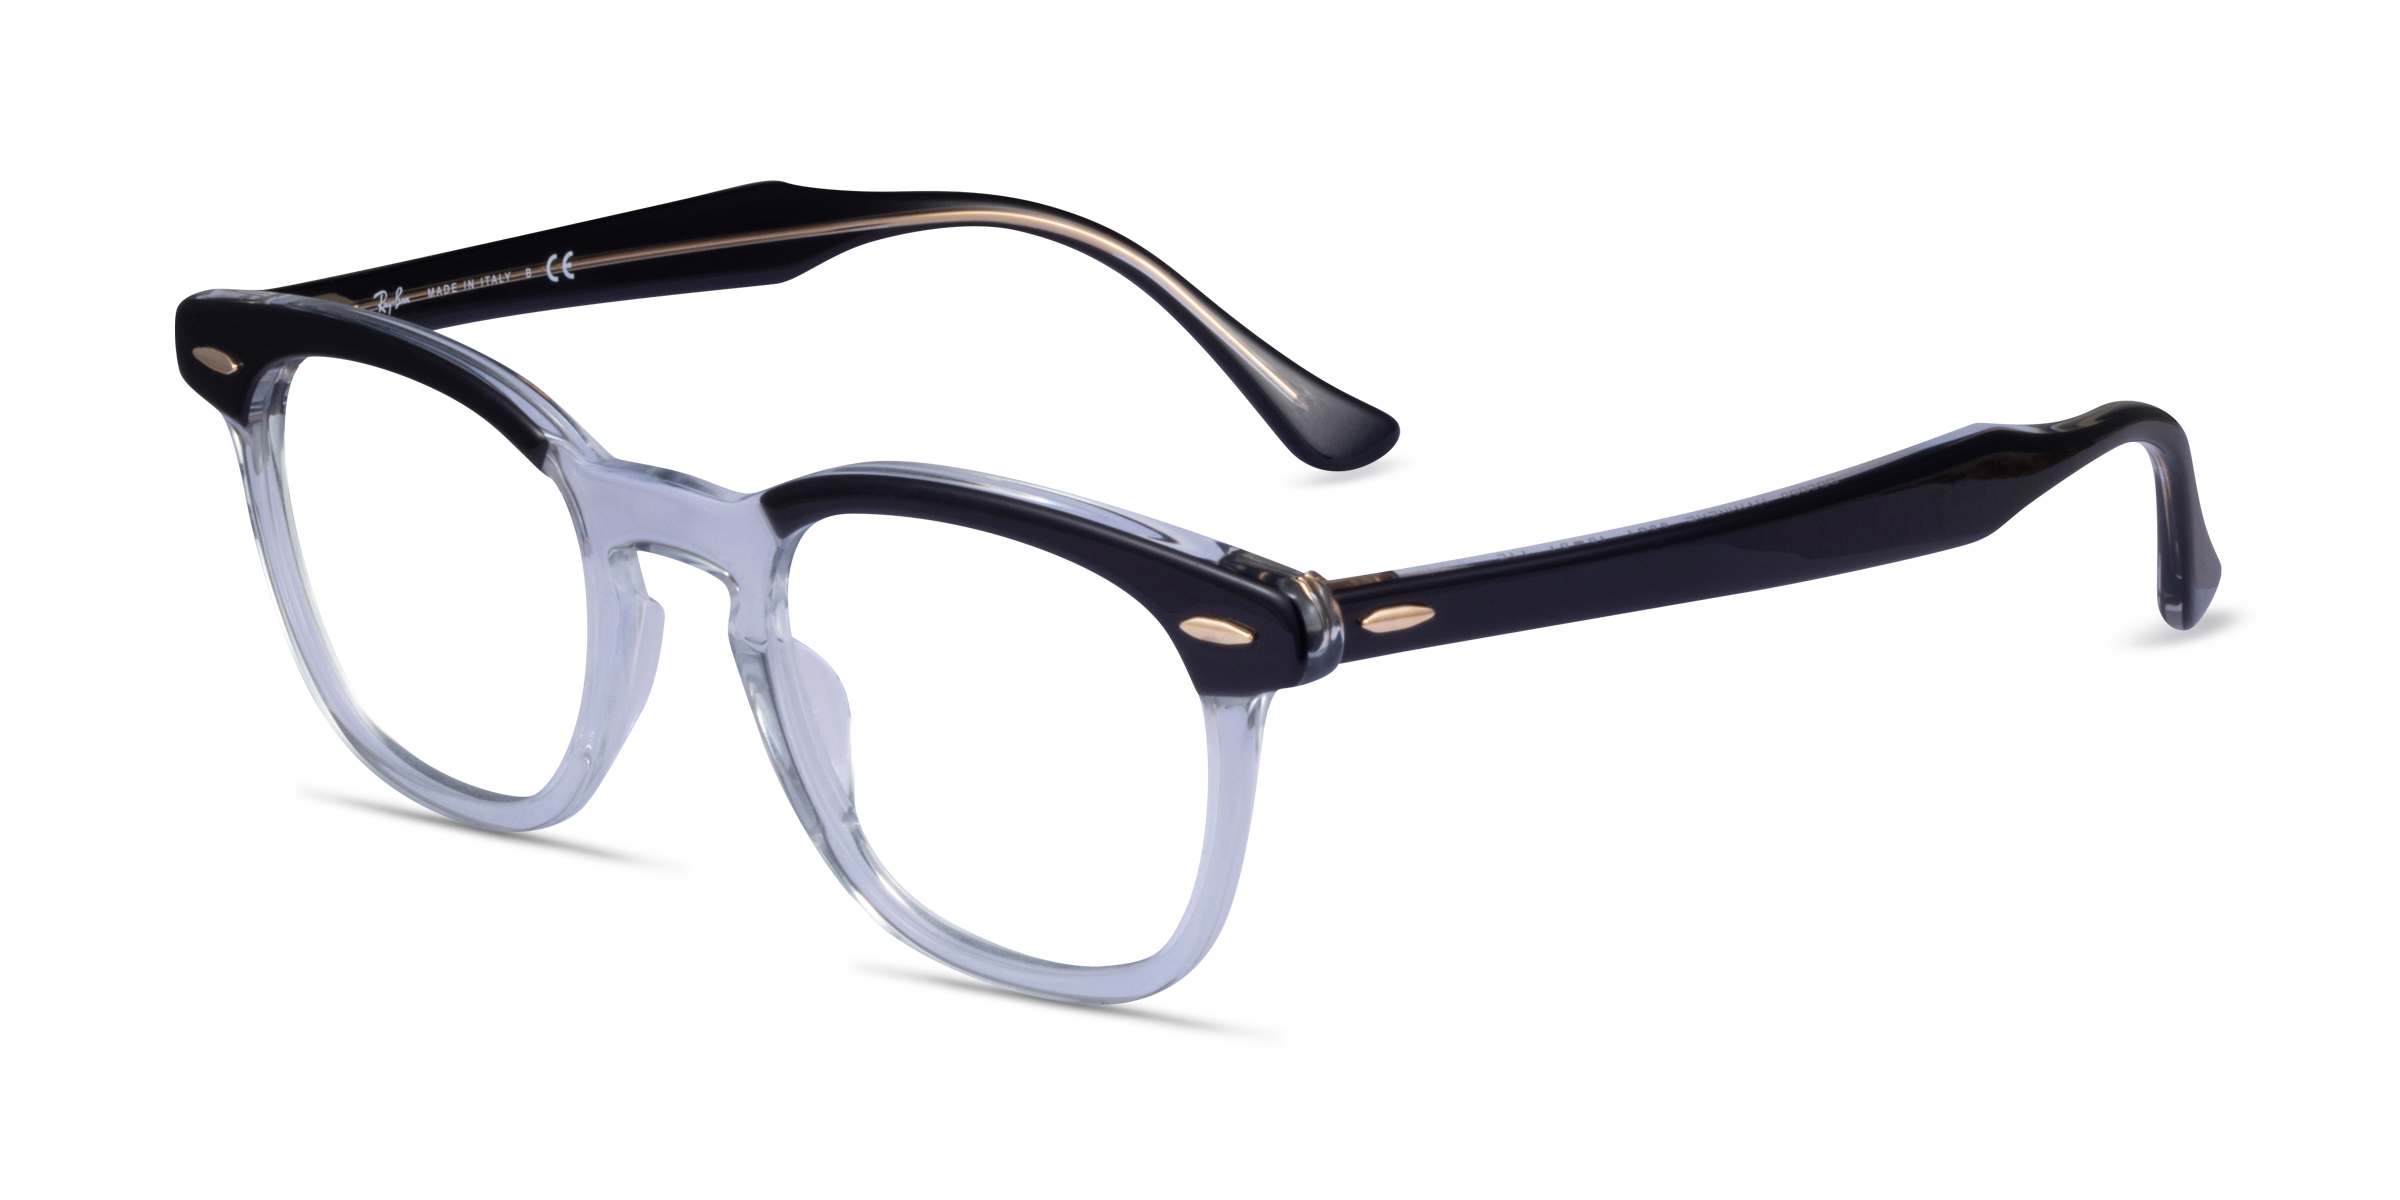 Ray-Ban RB5398 Hawkeye - Square Black Clear Frame Eyeglasses | Eyebuydirect